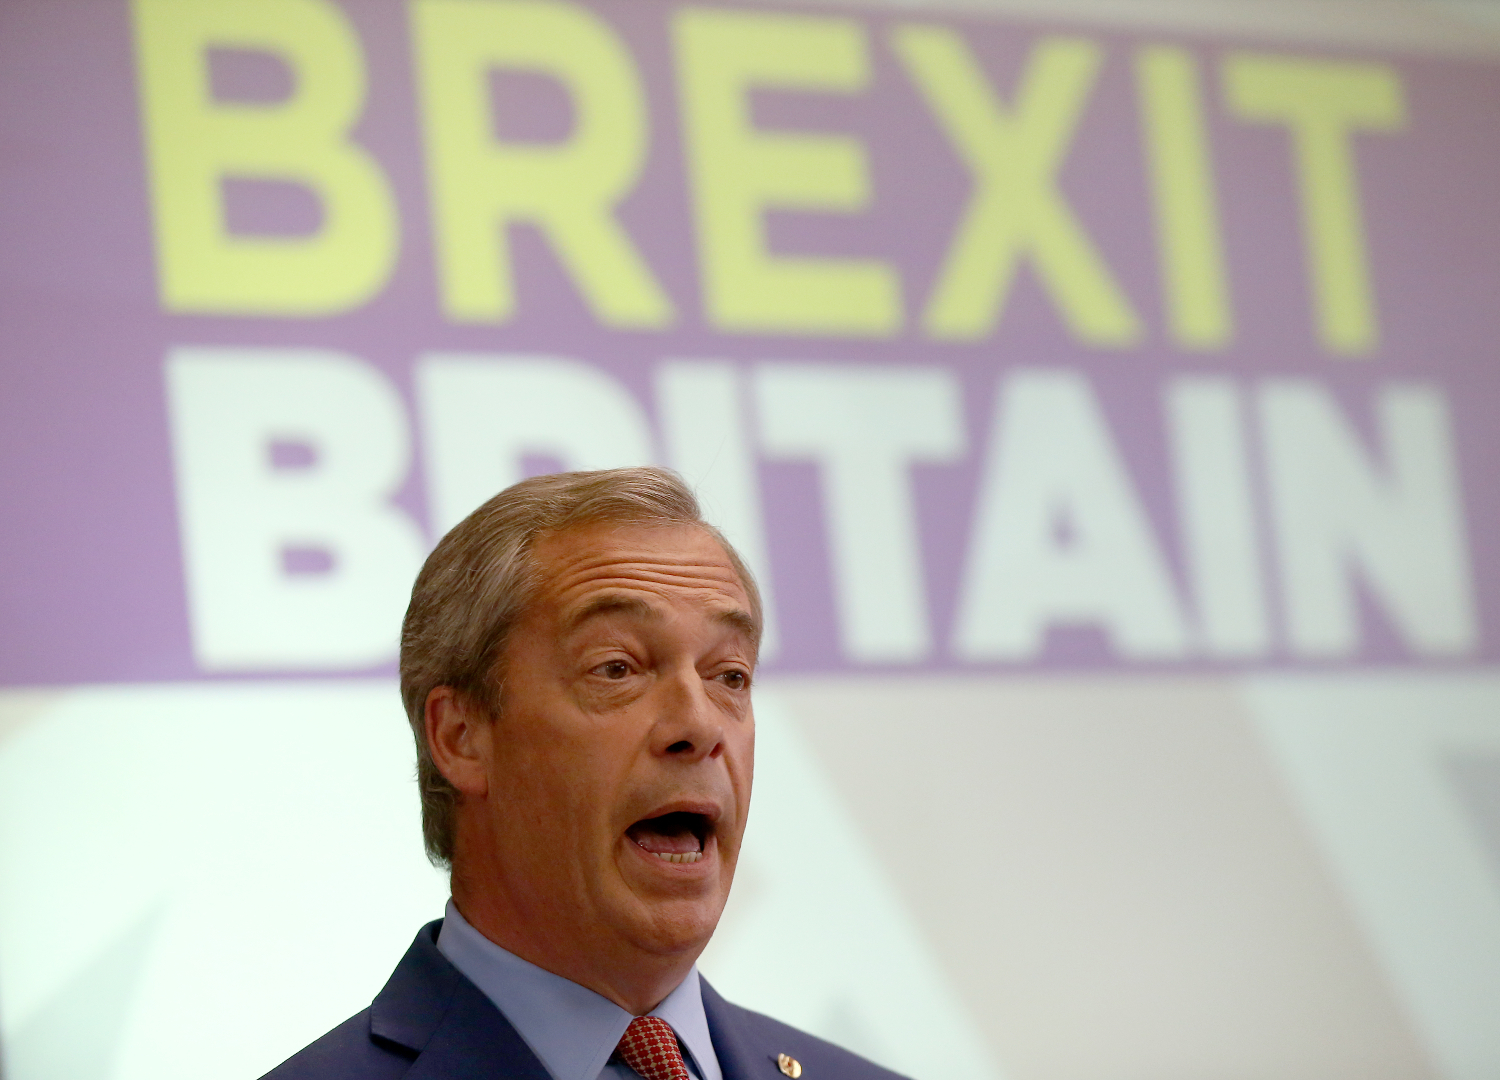 El gran triunfador del Brexit Nigel Farage dimite como líder de UKIP